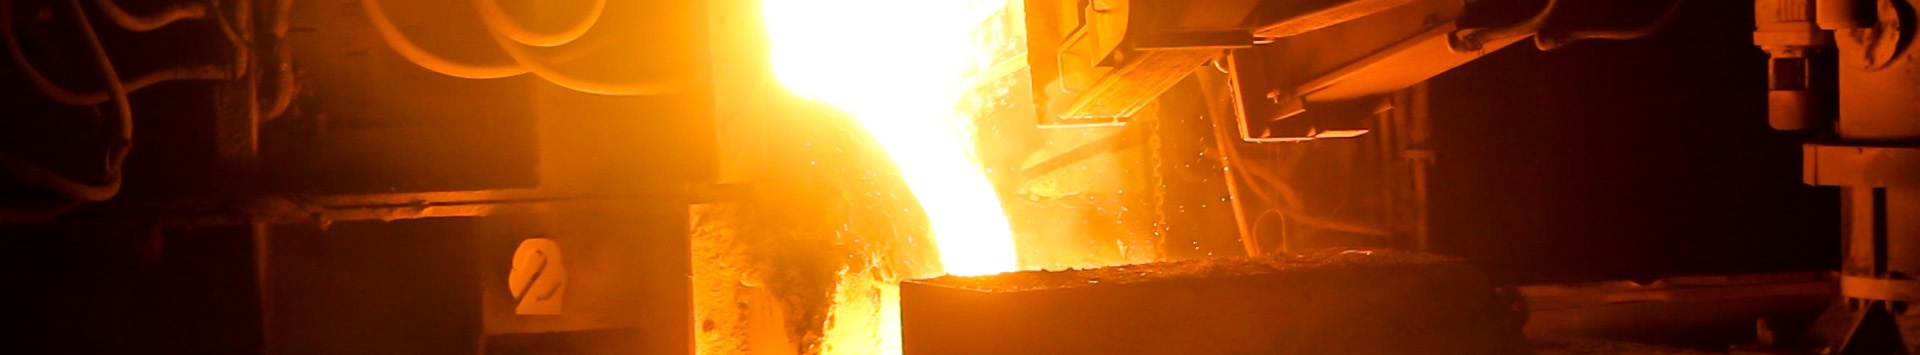 Webinar EcoTermIP – Ecoeficiência dos Processos Térmicos Industriais no setor da Metalurgia e Metalomecânica